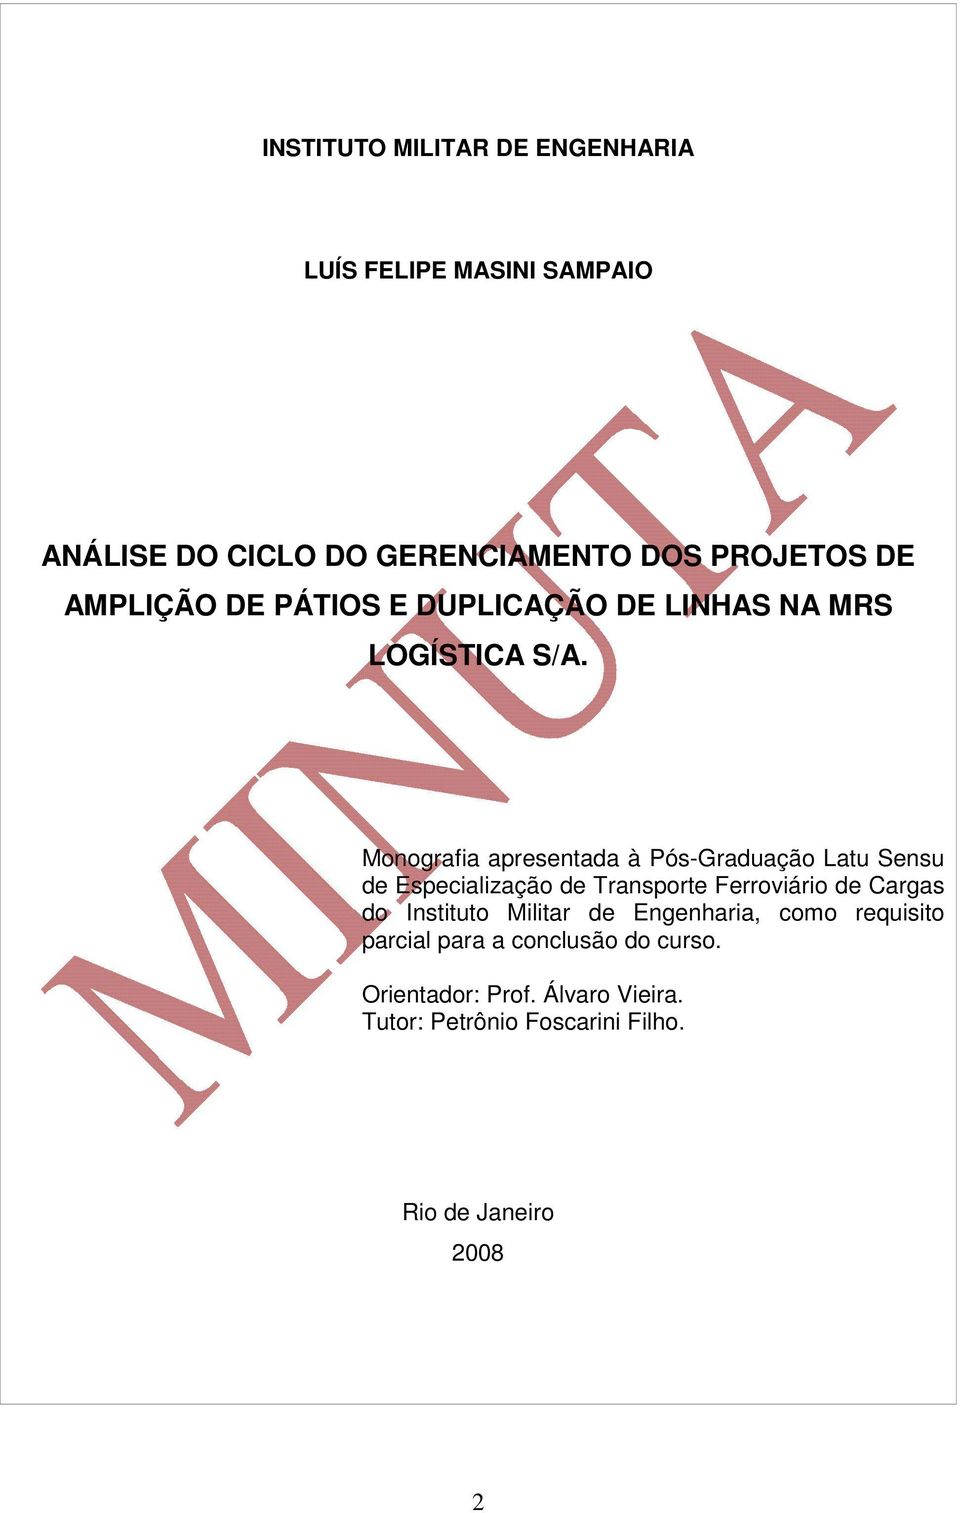 Monografia apresentada à Pós-Graduação Latu Sensu de Especialização de Transporte Ferroviário de Cargas do